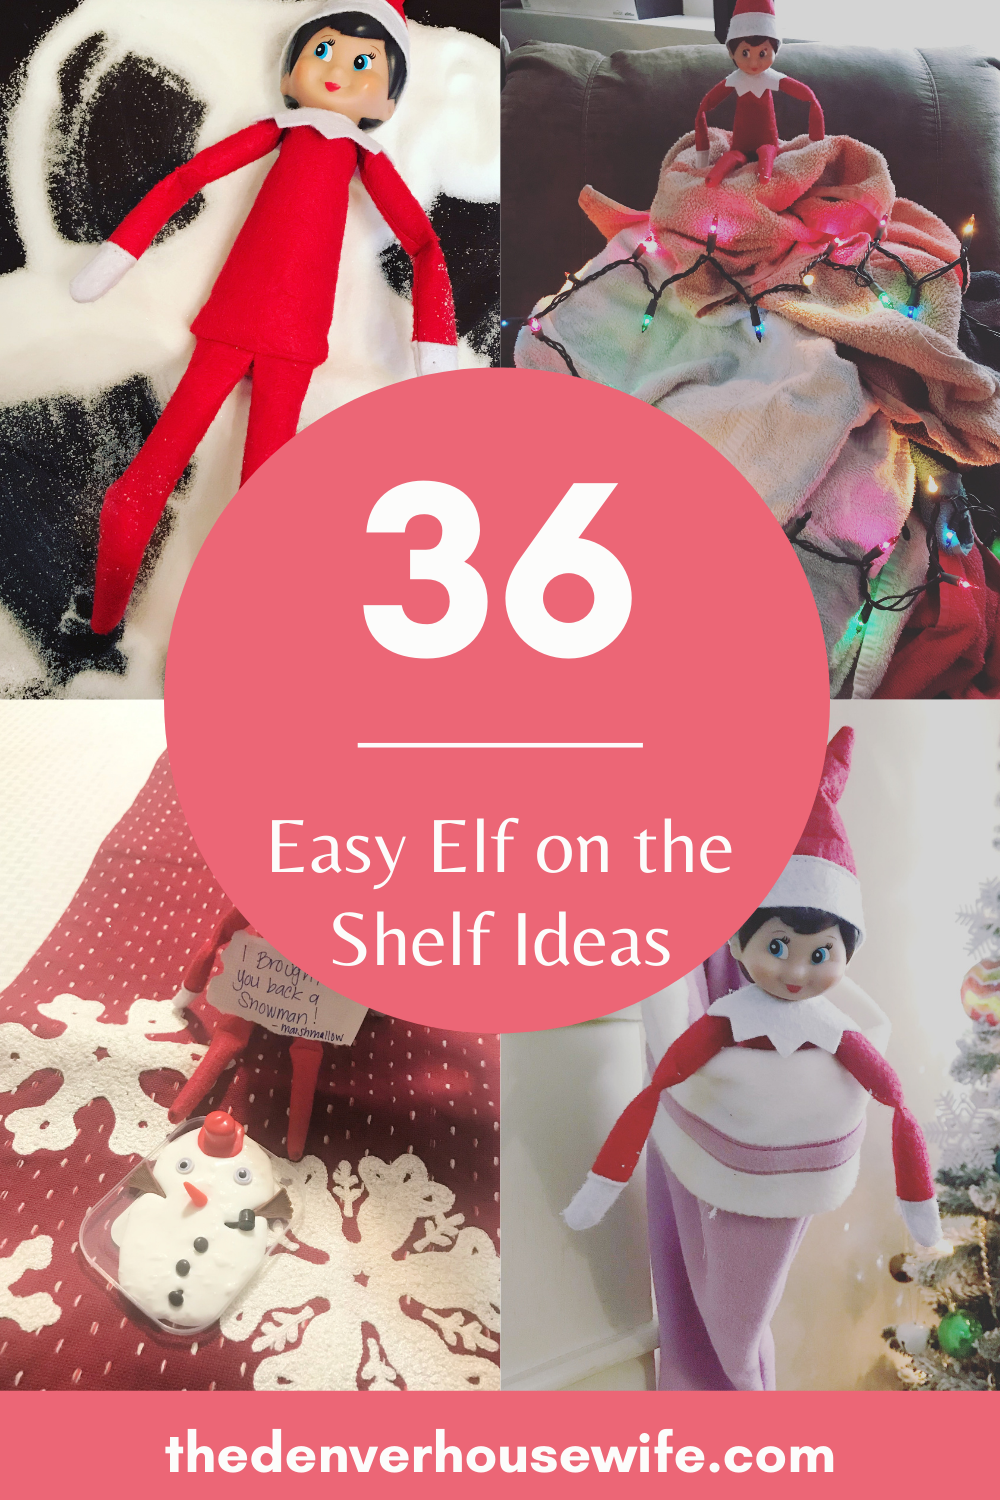 Easy Elf on the Shelf Ideas for Christmas Eve